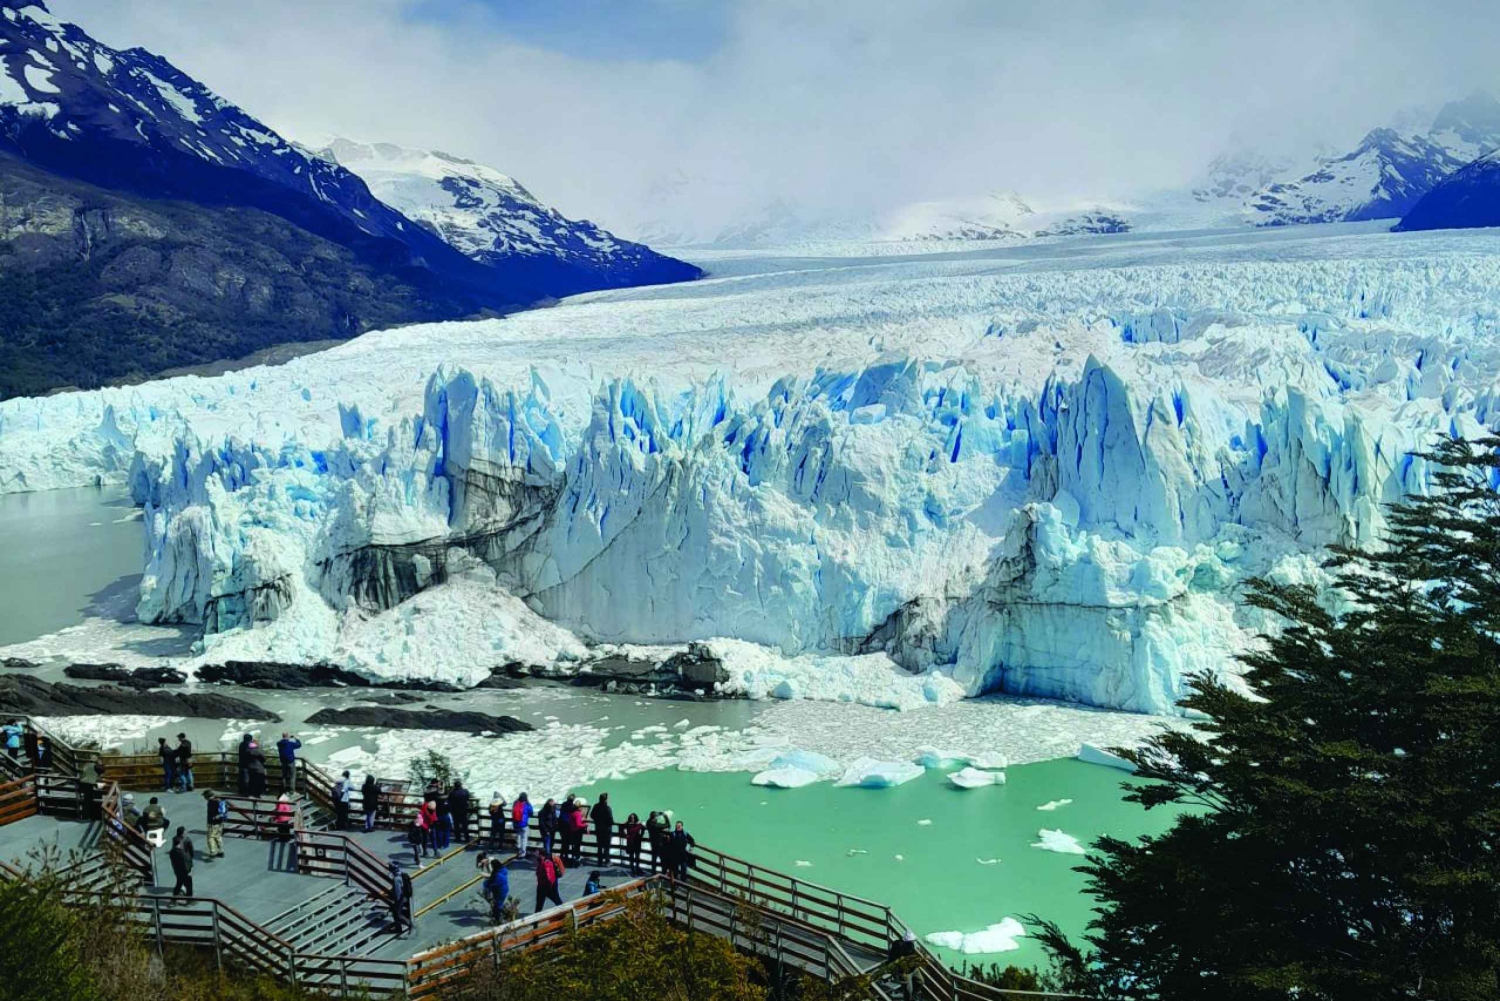 El Calafate, Perito Moreno gletsjer klassieke rondleiding met gids